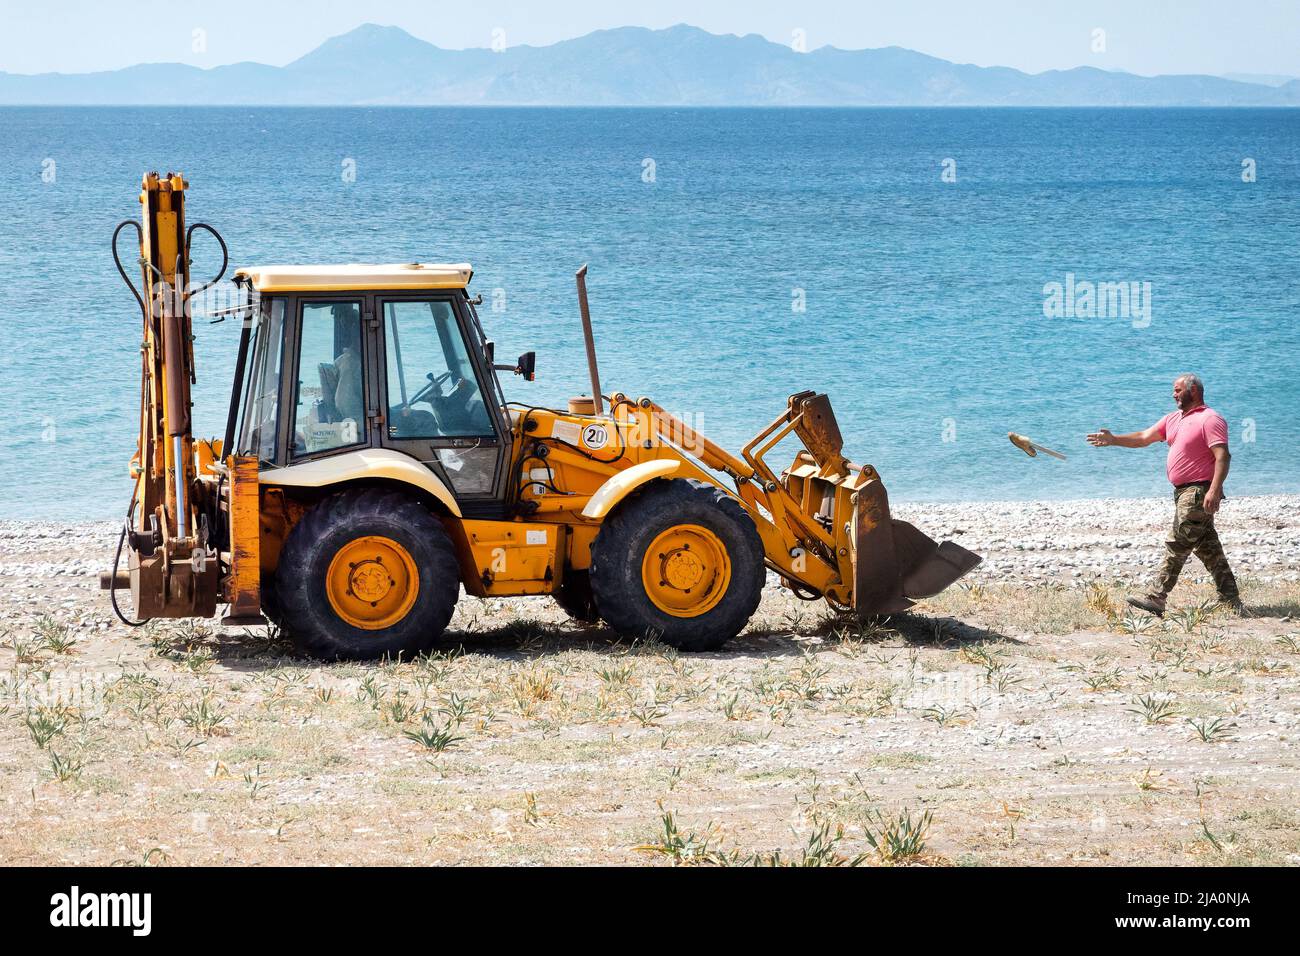 Un ouvrier jette des détritus dans un saut de livres JCB tout en nettoyant les ordures jetées sur une plage près de Rhodes City, Rhodes Grèce. Banque D'Images